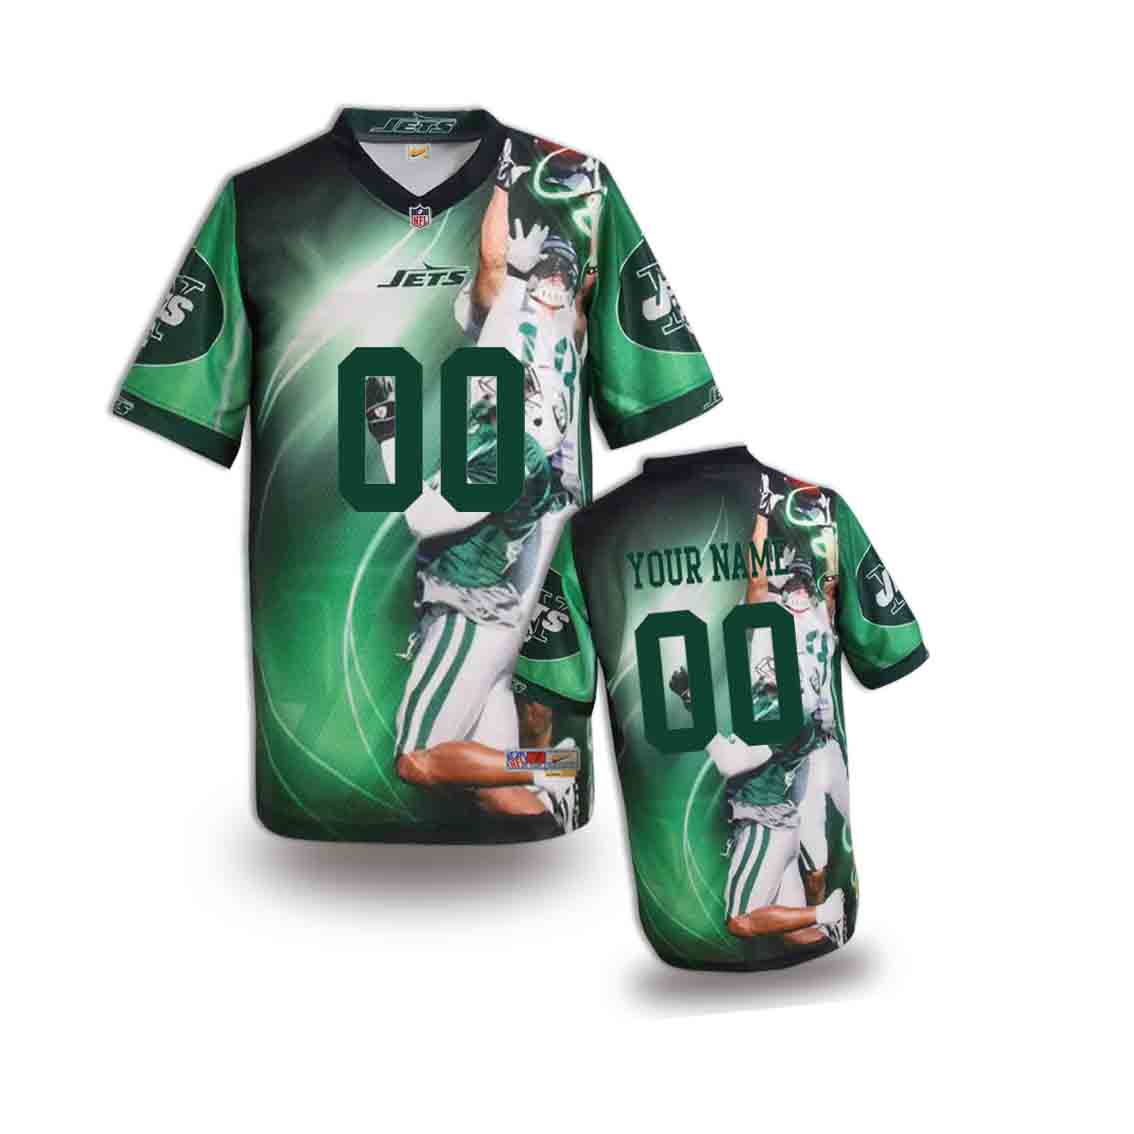 Nike Jets Customized Fashion Stitched Youth Jerseys02